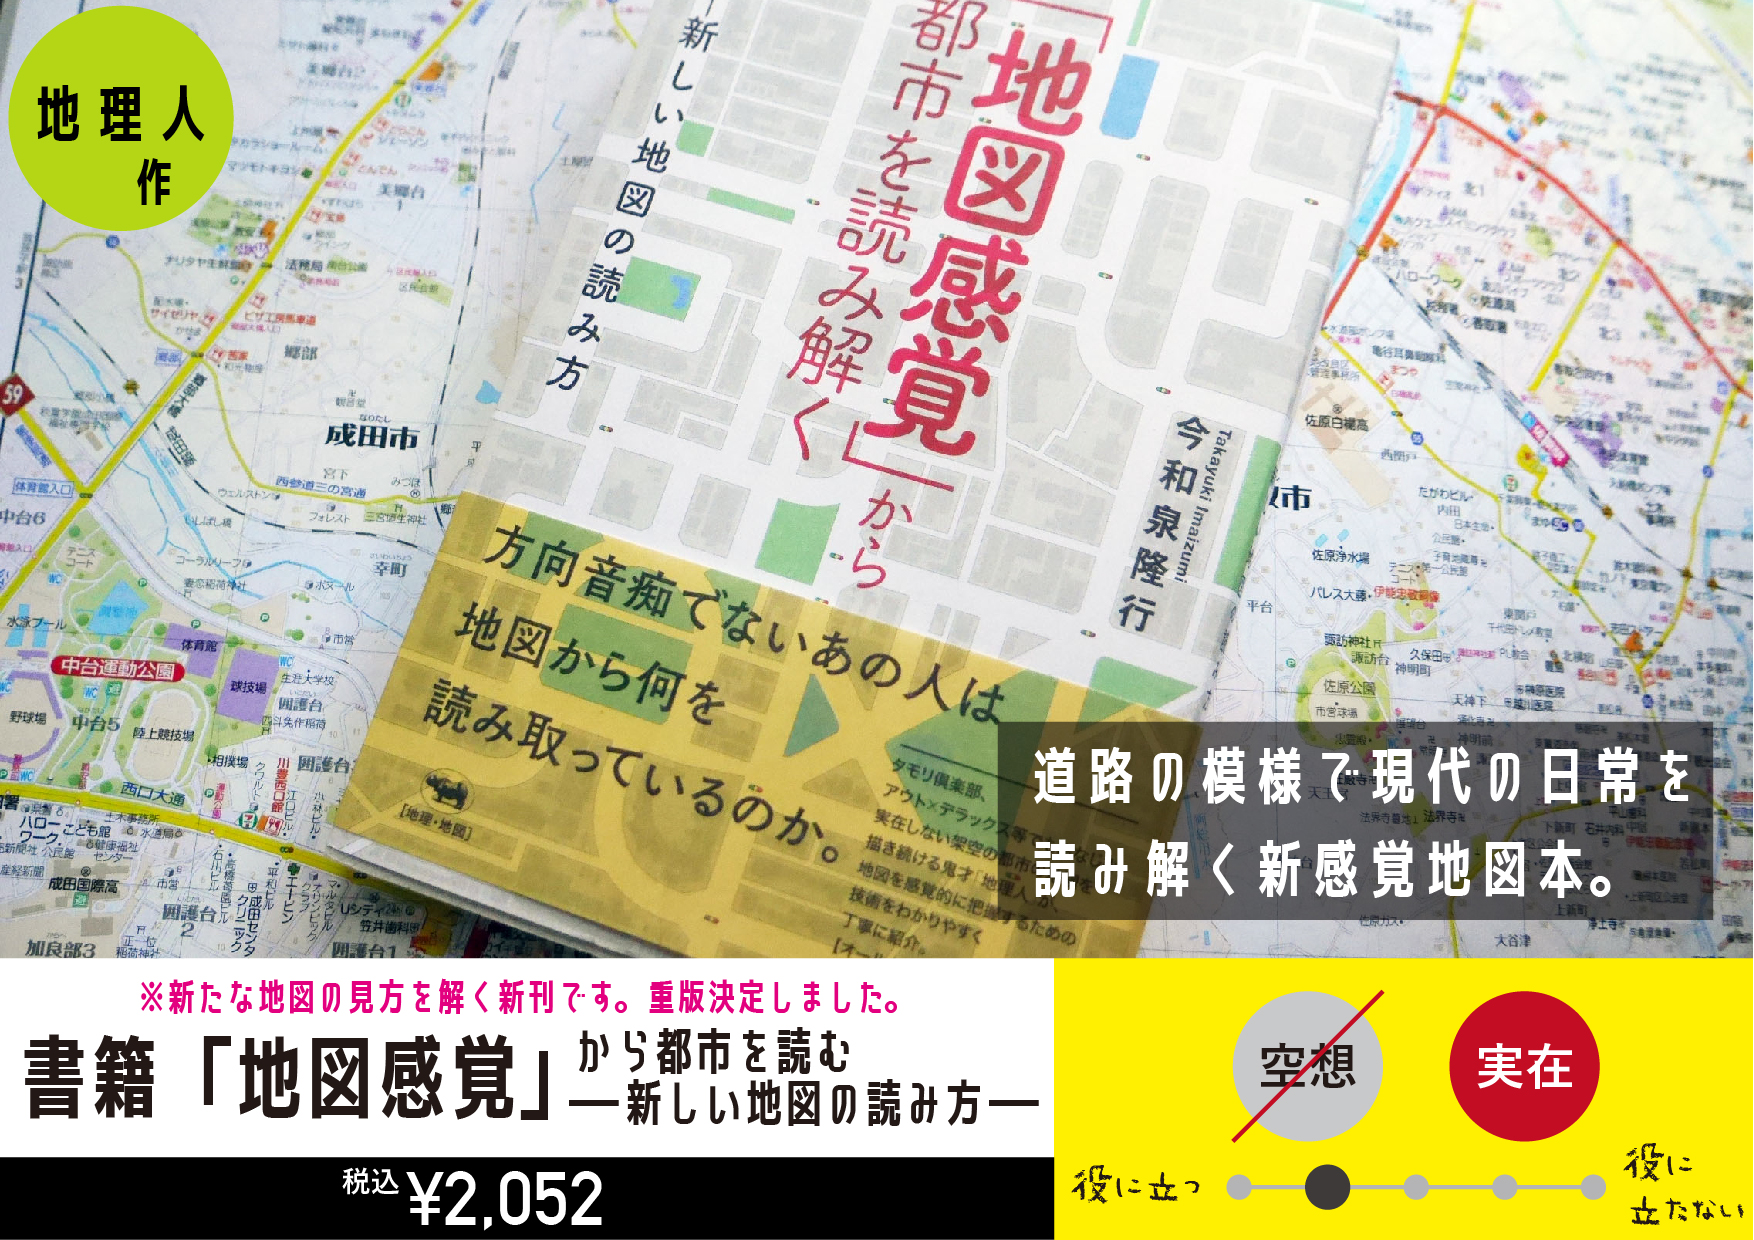 書籍「地図感覚」から都市を読む―新しい地図の読み方―